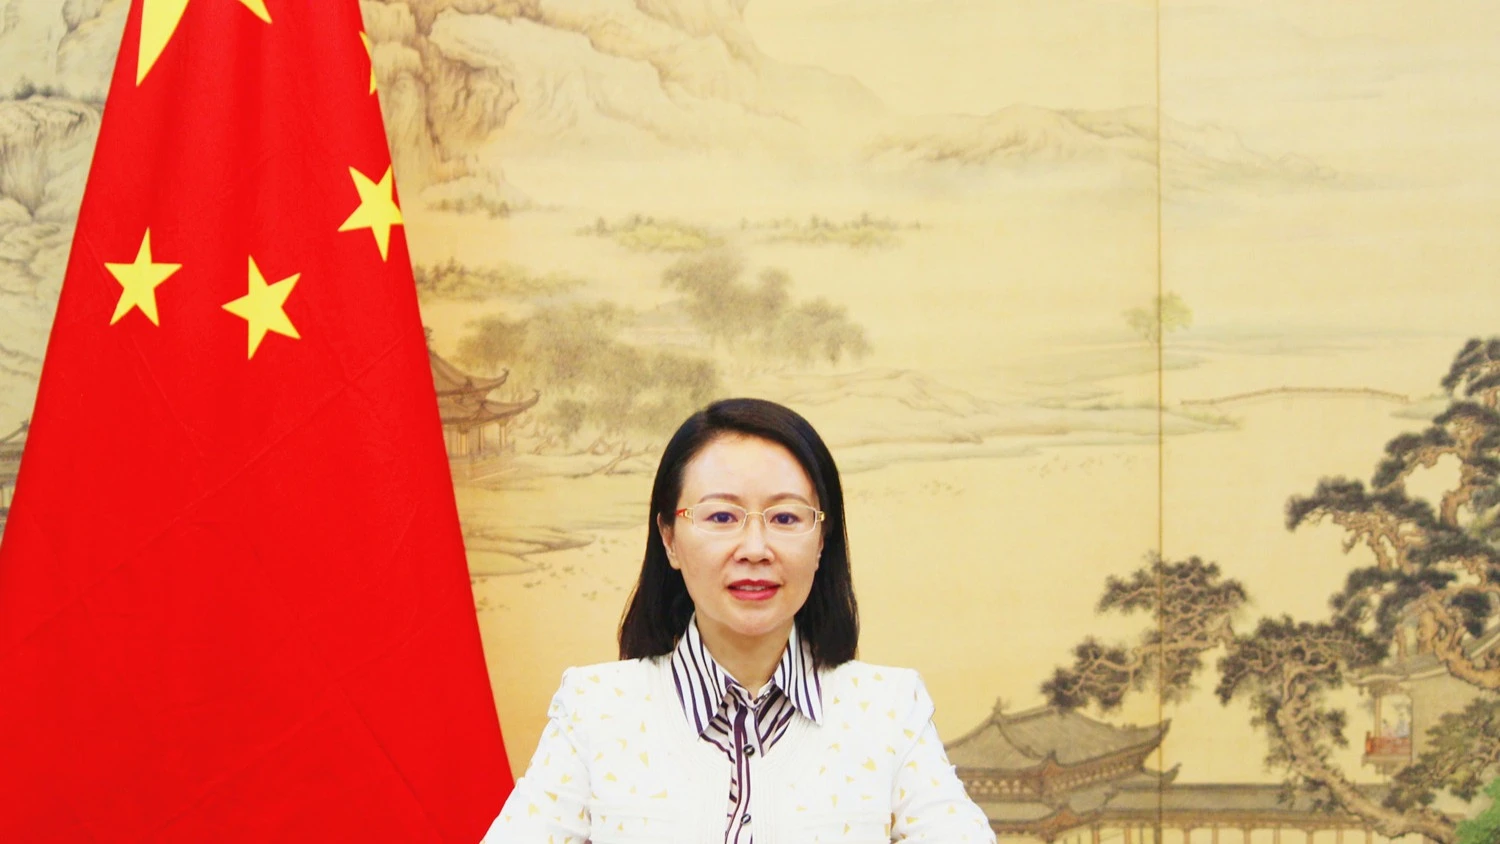  Chen Mingjian, is the Chinese Ambassador to Tanzania.